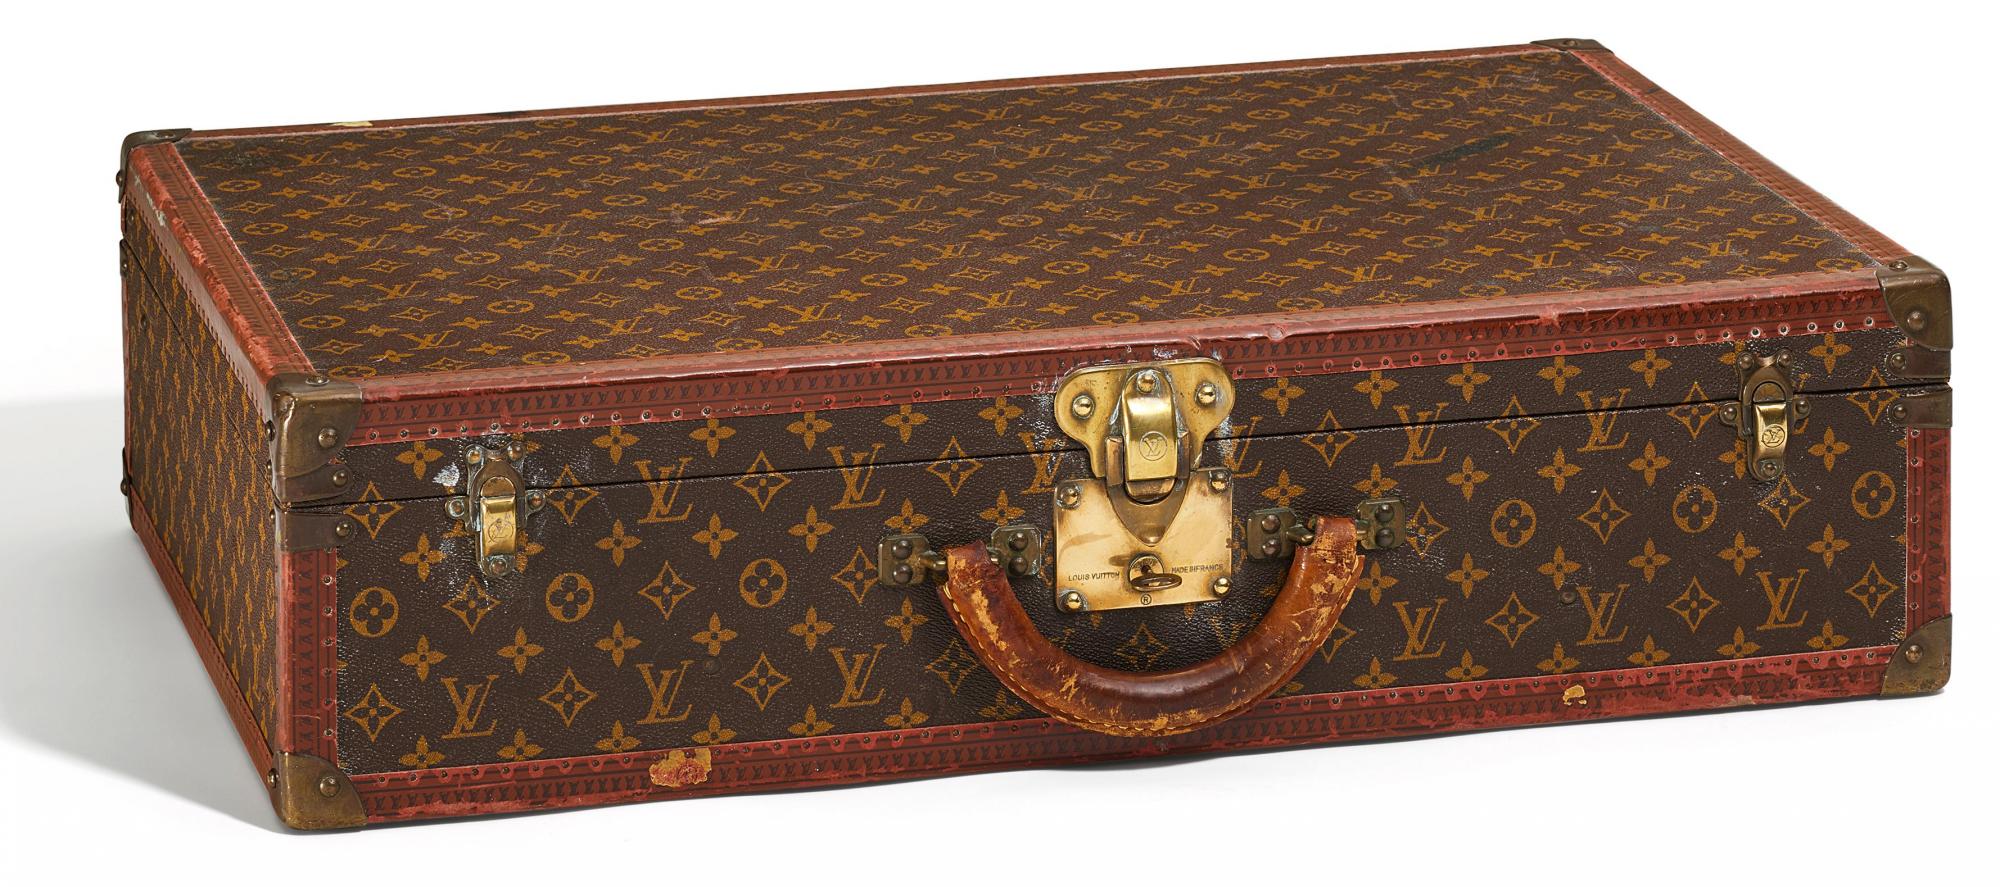 VUITTON, LOUISAlzer 70. Suitcase. Origin: France. Date: 1980s. Measurement: 70,0 x 47,0 x 17,5cm.